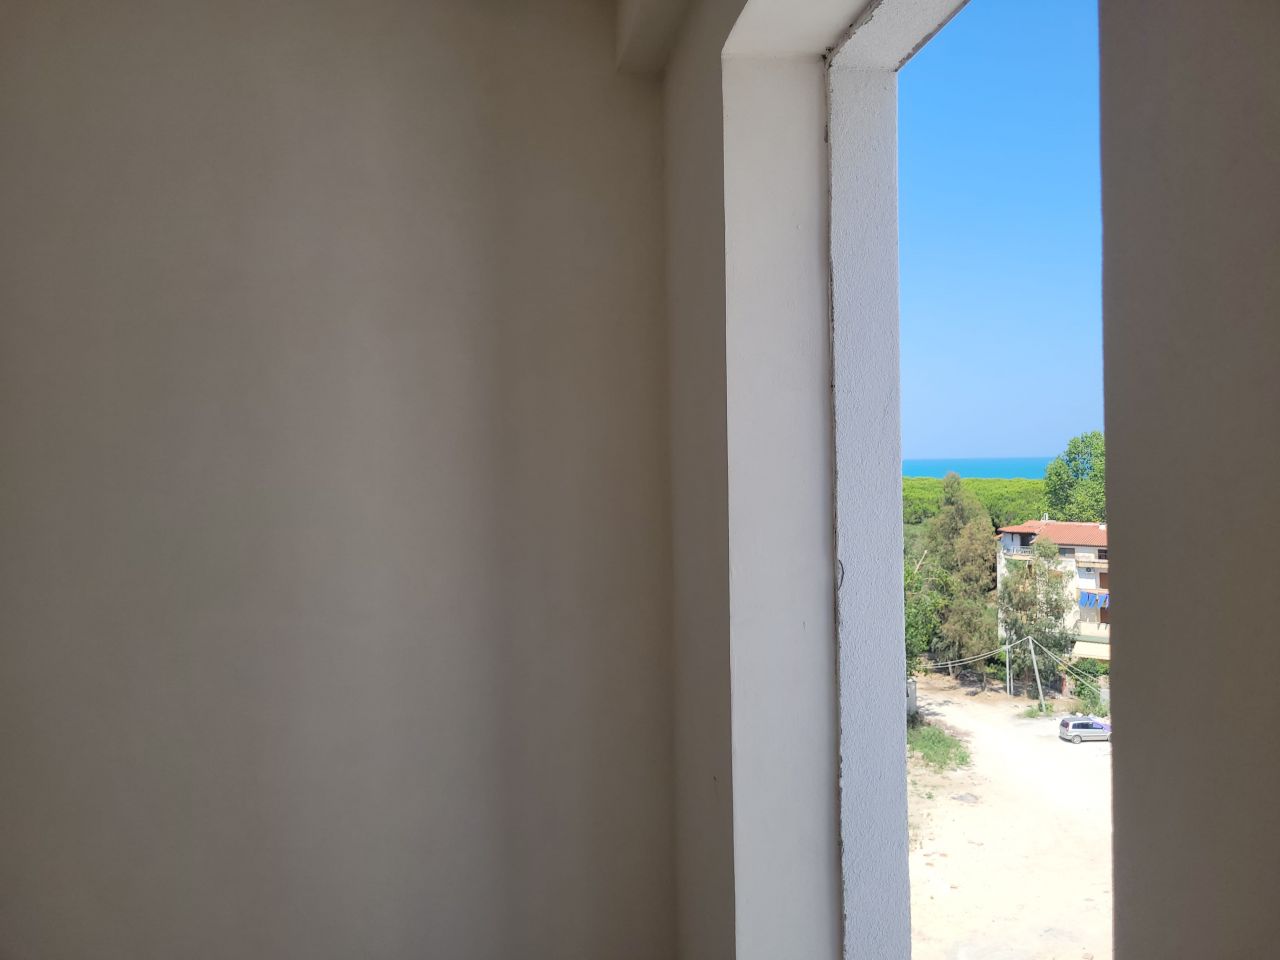 Eladó Lakás Golem Durres-ben Albániában, Egy építés Alatt álló új épületben, Közel A Strandhoz